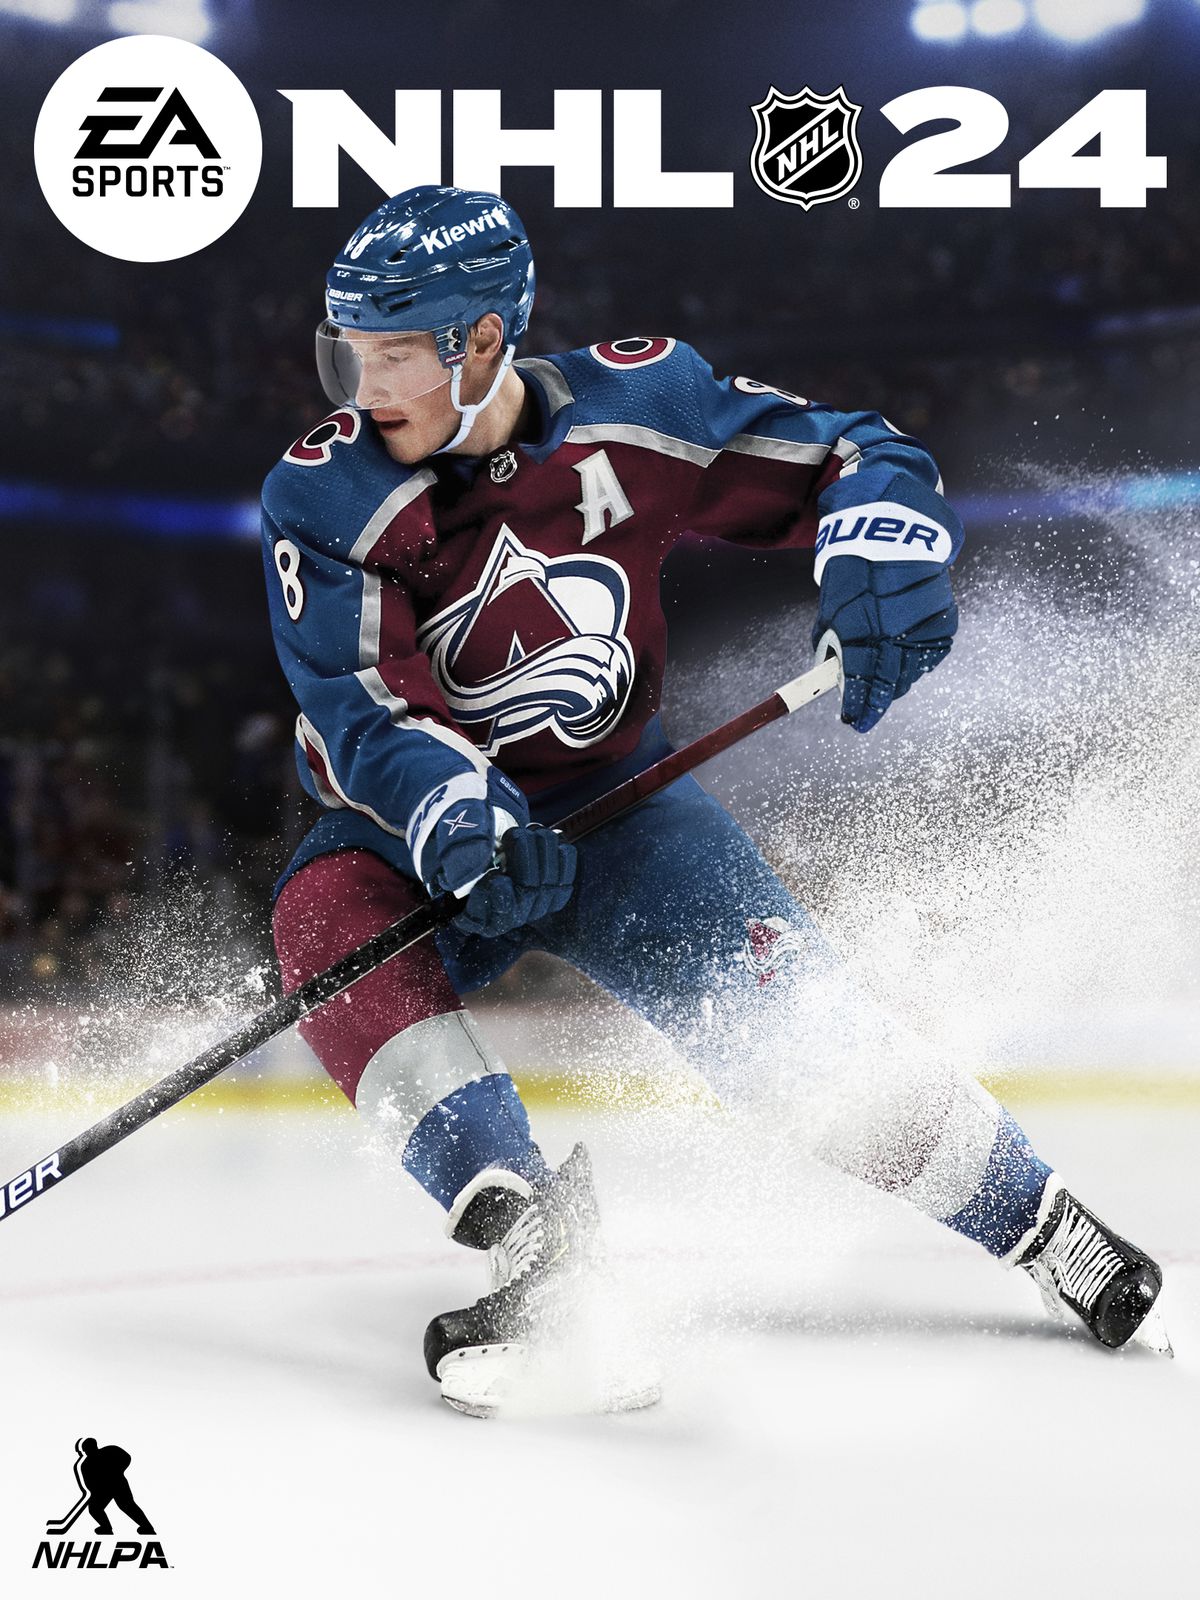 omslagsbilden för NHL 24, som visar Cale Makar från Colorado Avalanche